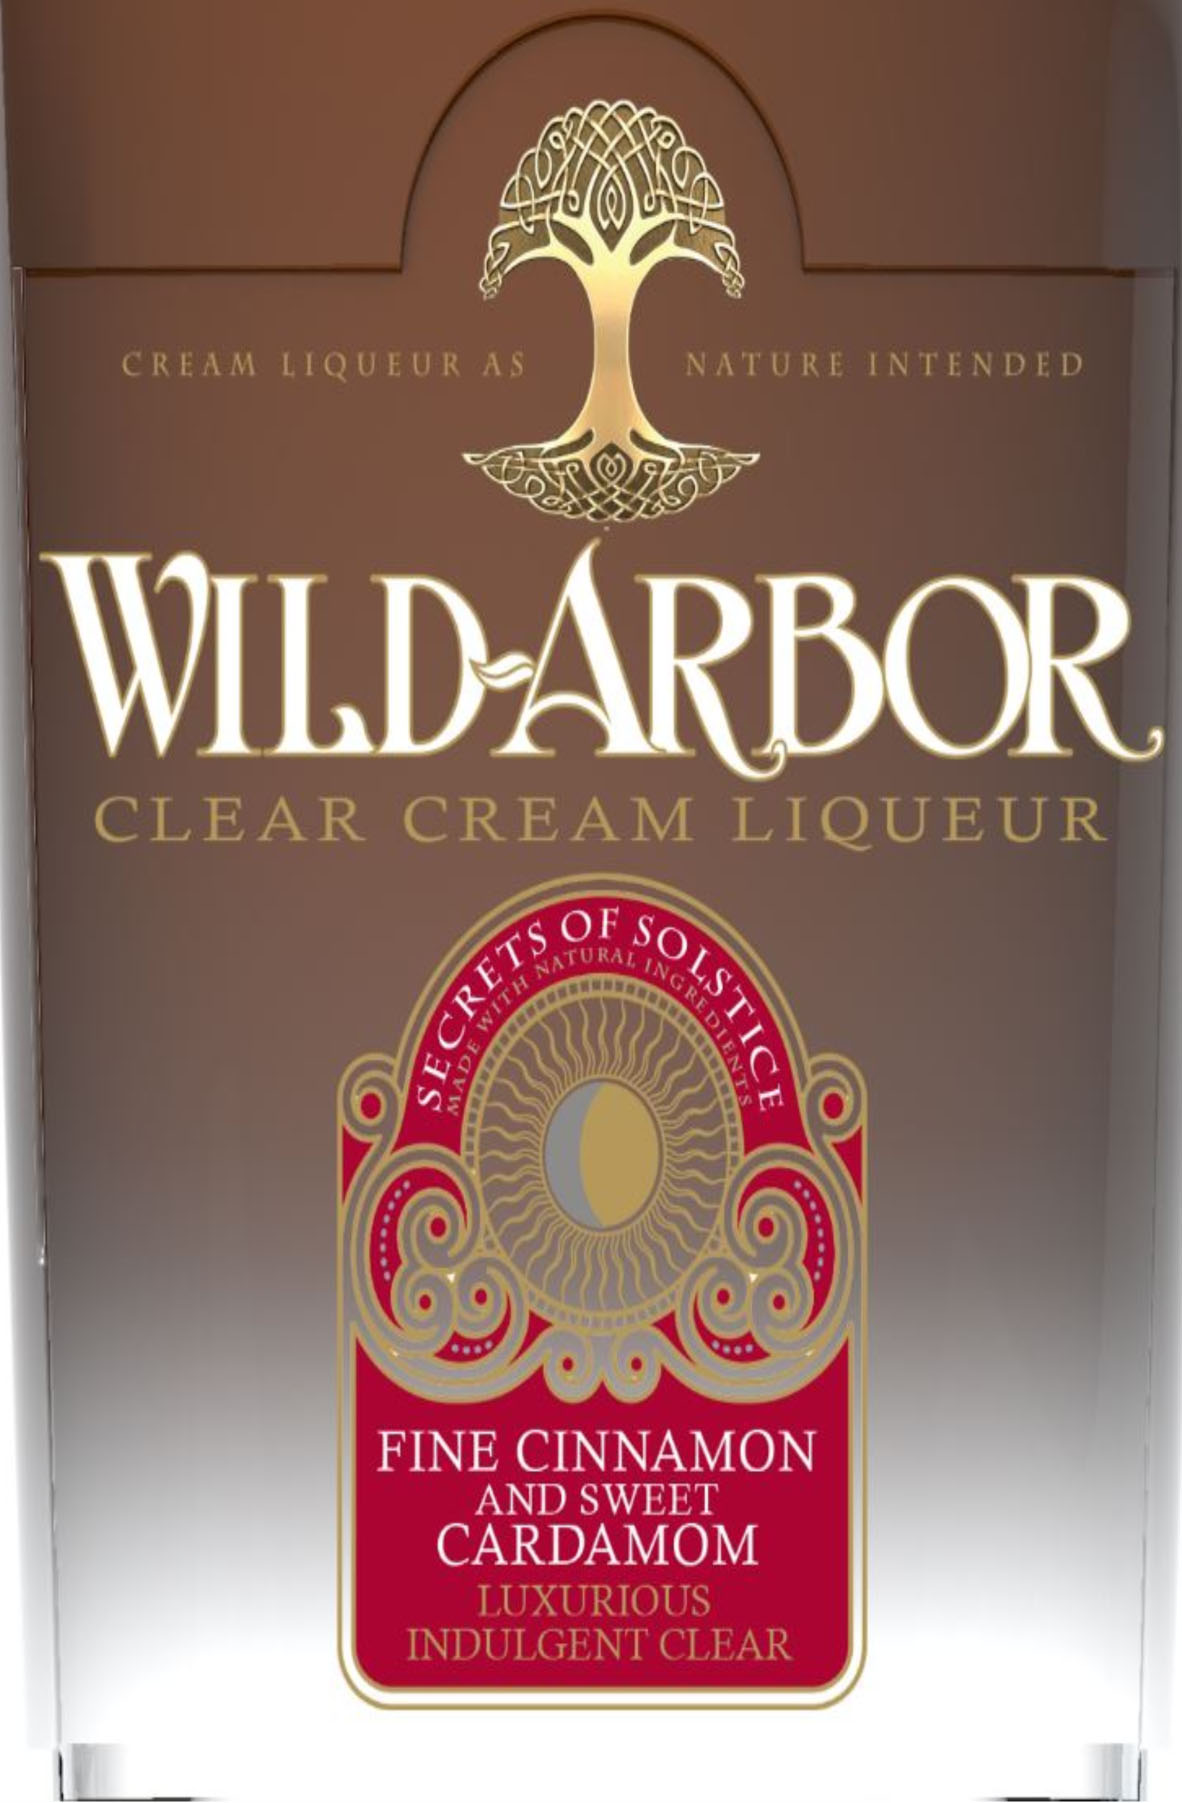 Wild Arbor - Clear Cream Liqueur - Secret of Solstice (SOS) label